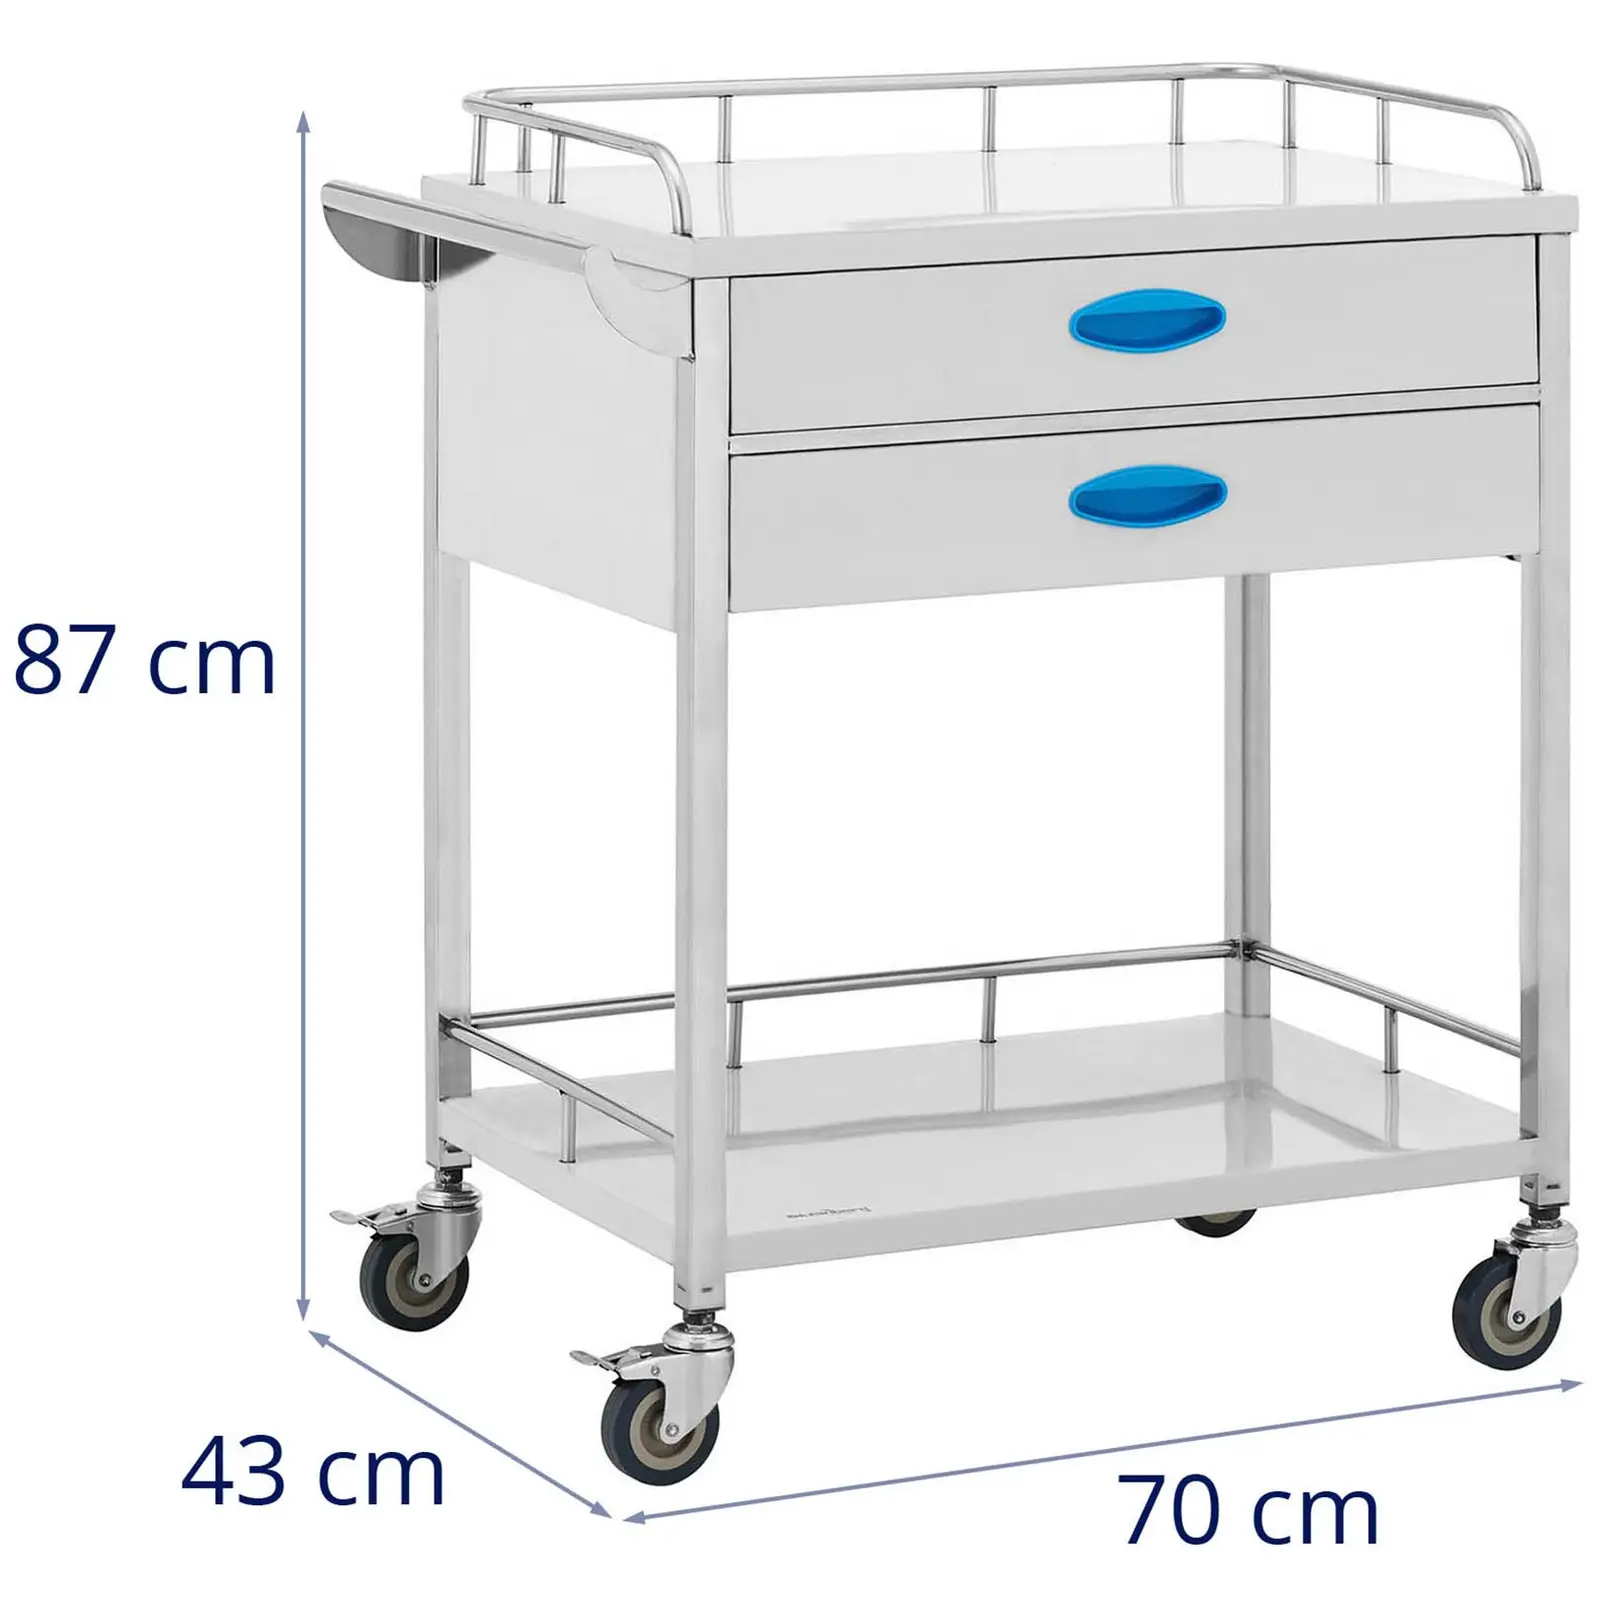 Laboratorní vozík - ušlechtilá ocel - 2 police o rozměru 60 x 41 x 26 cm - 2 zásuvky - 40 kg